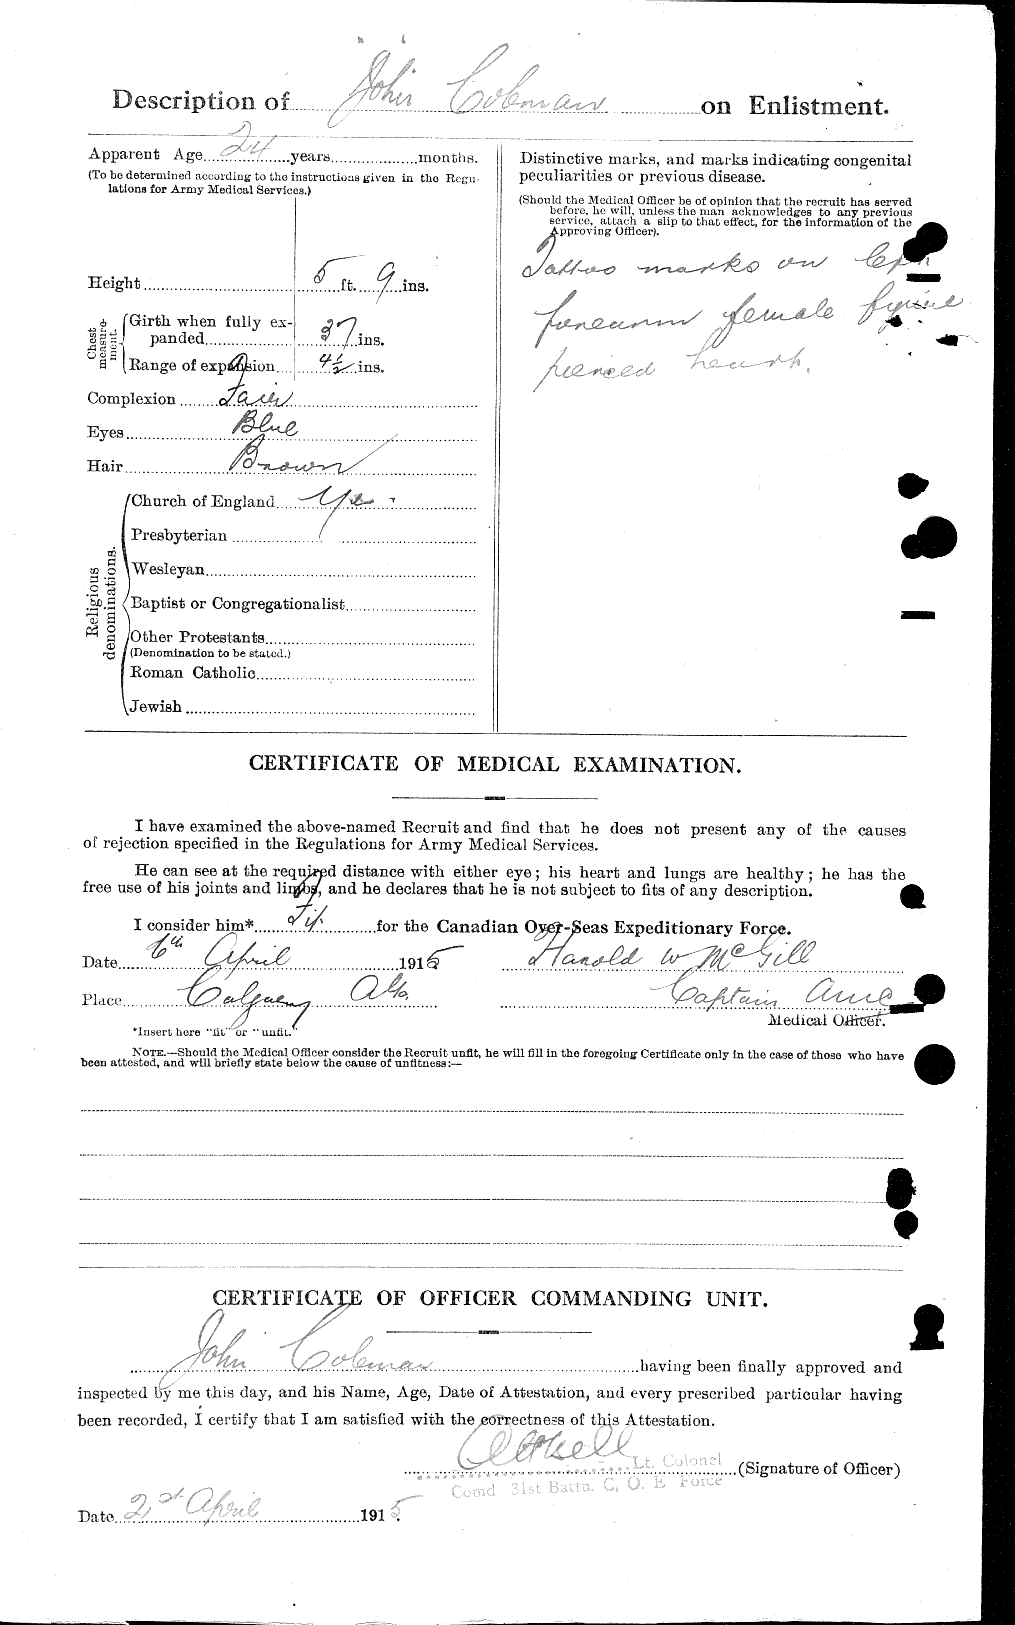 Dossiers du Personnel de la Première Guerre mondiale - CEC 028197b